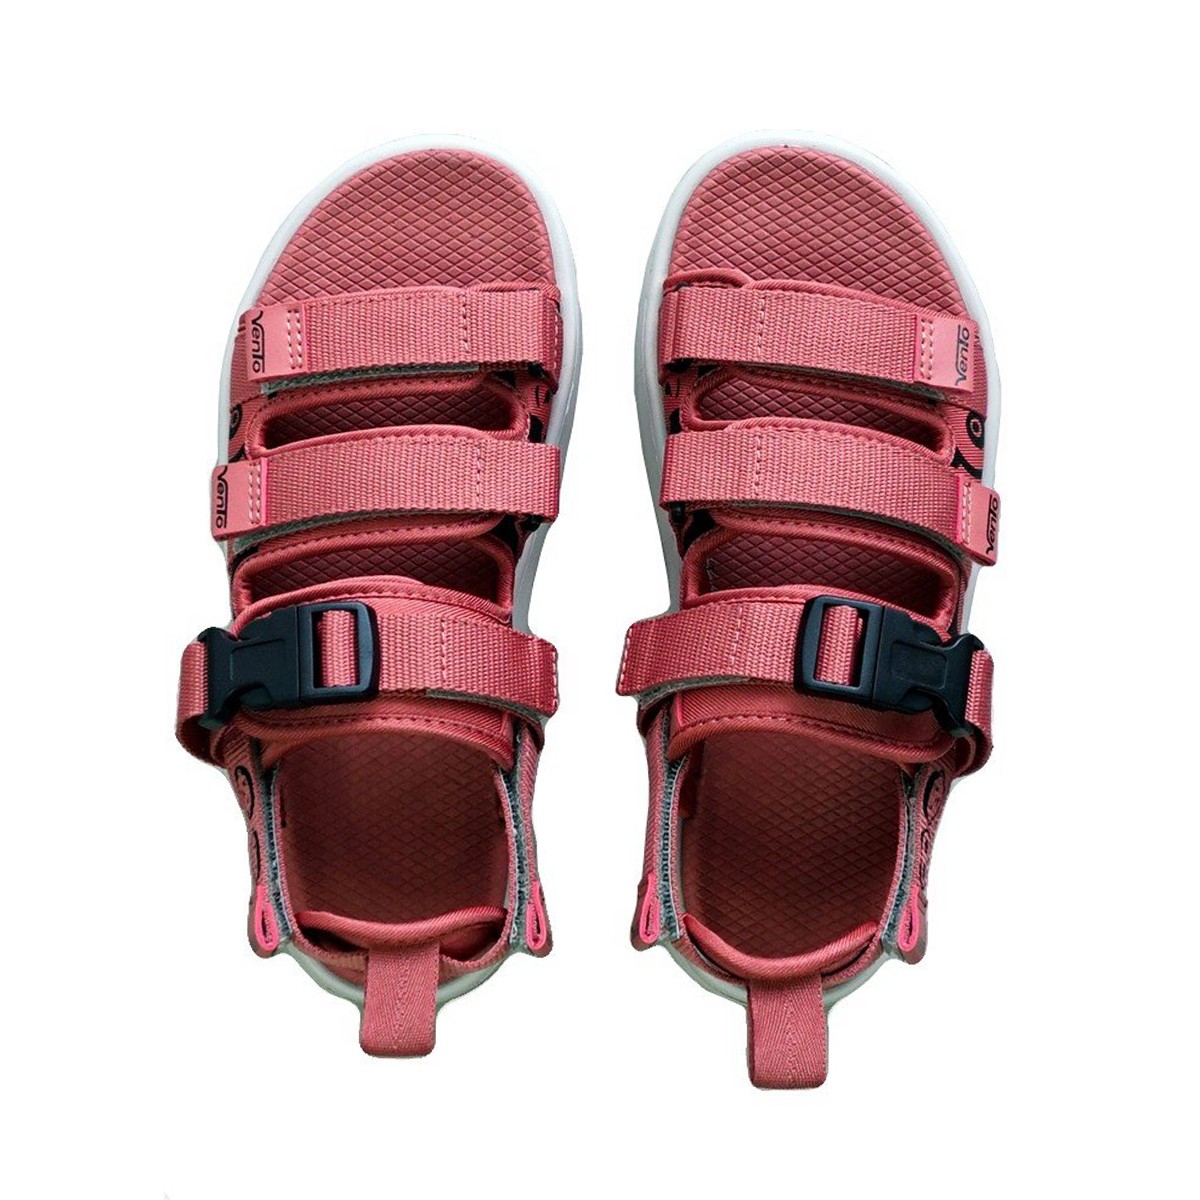 Giày sandal nữ siêu nhẹ hiệu Vento thích hợp mang đi học NB80P